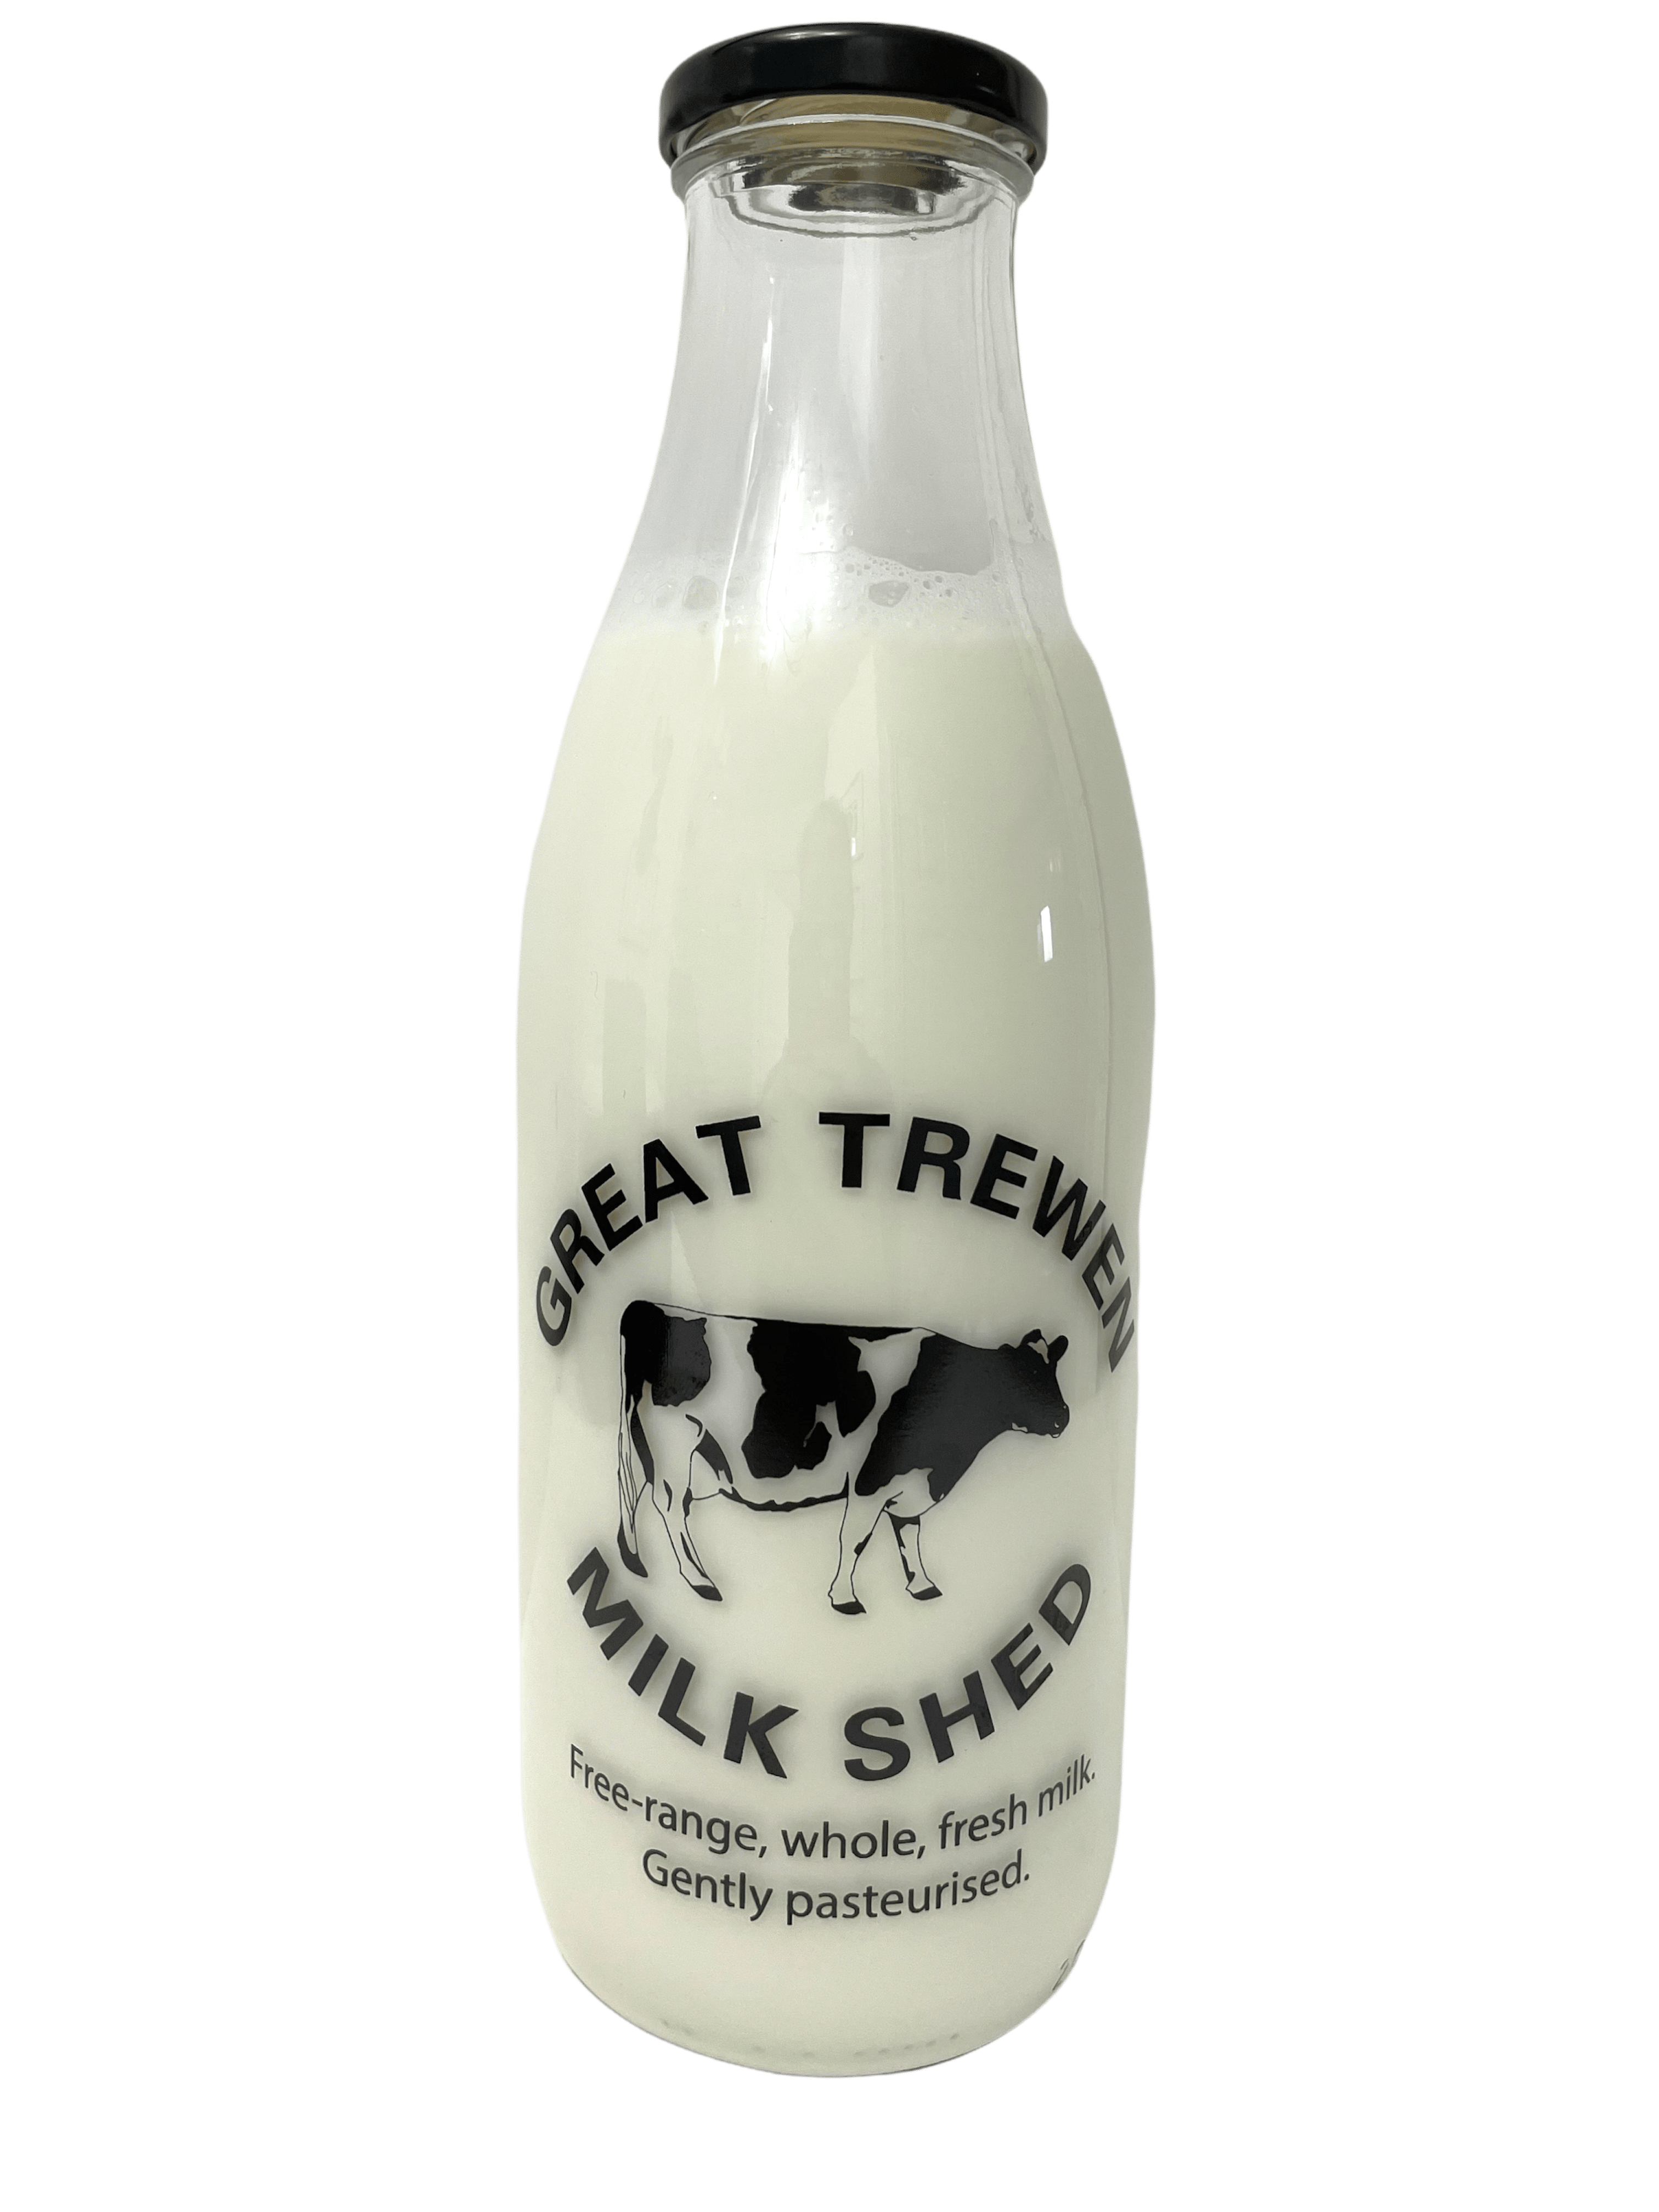 Great Trewen Milk Shed - Kelis.info